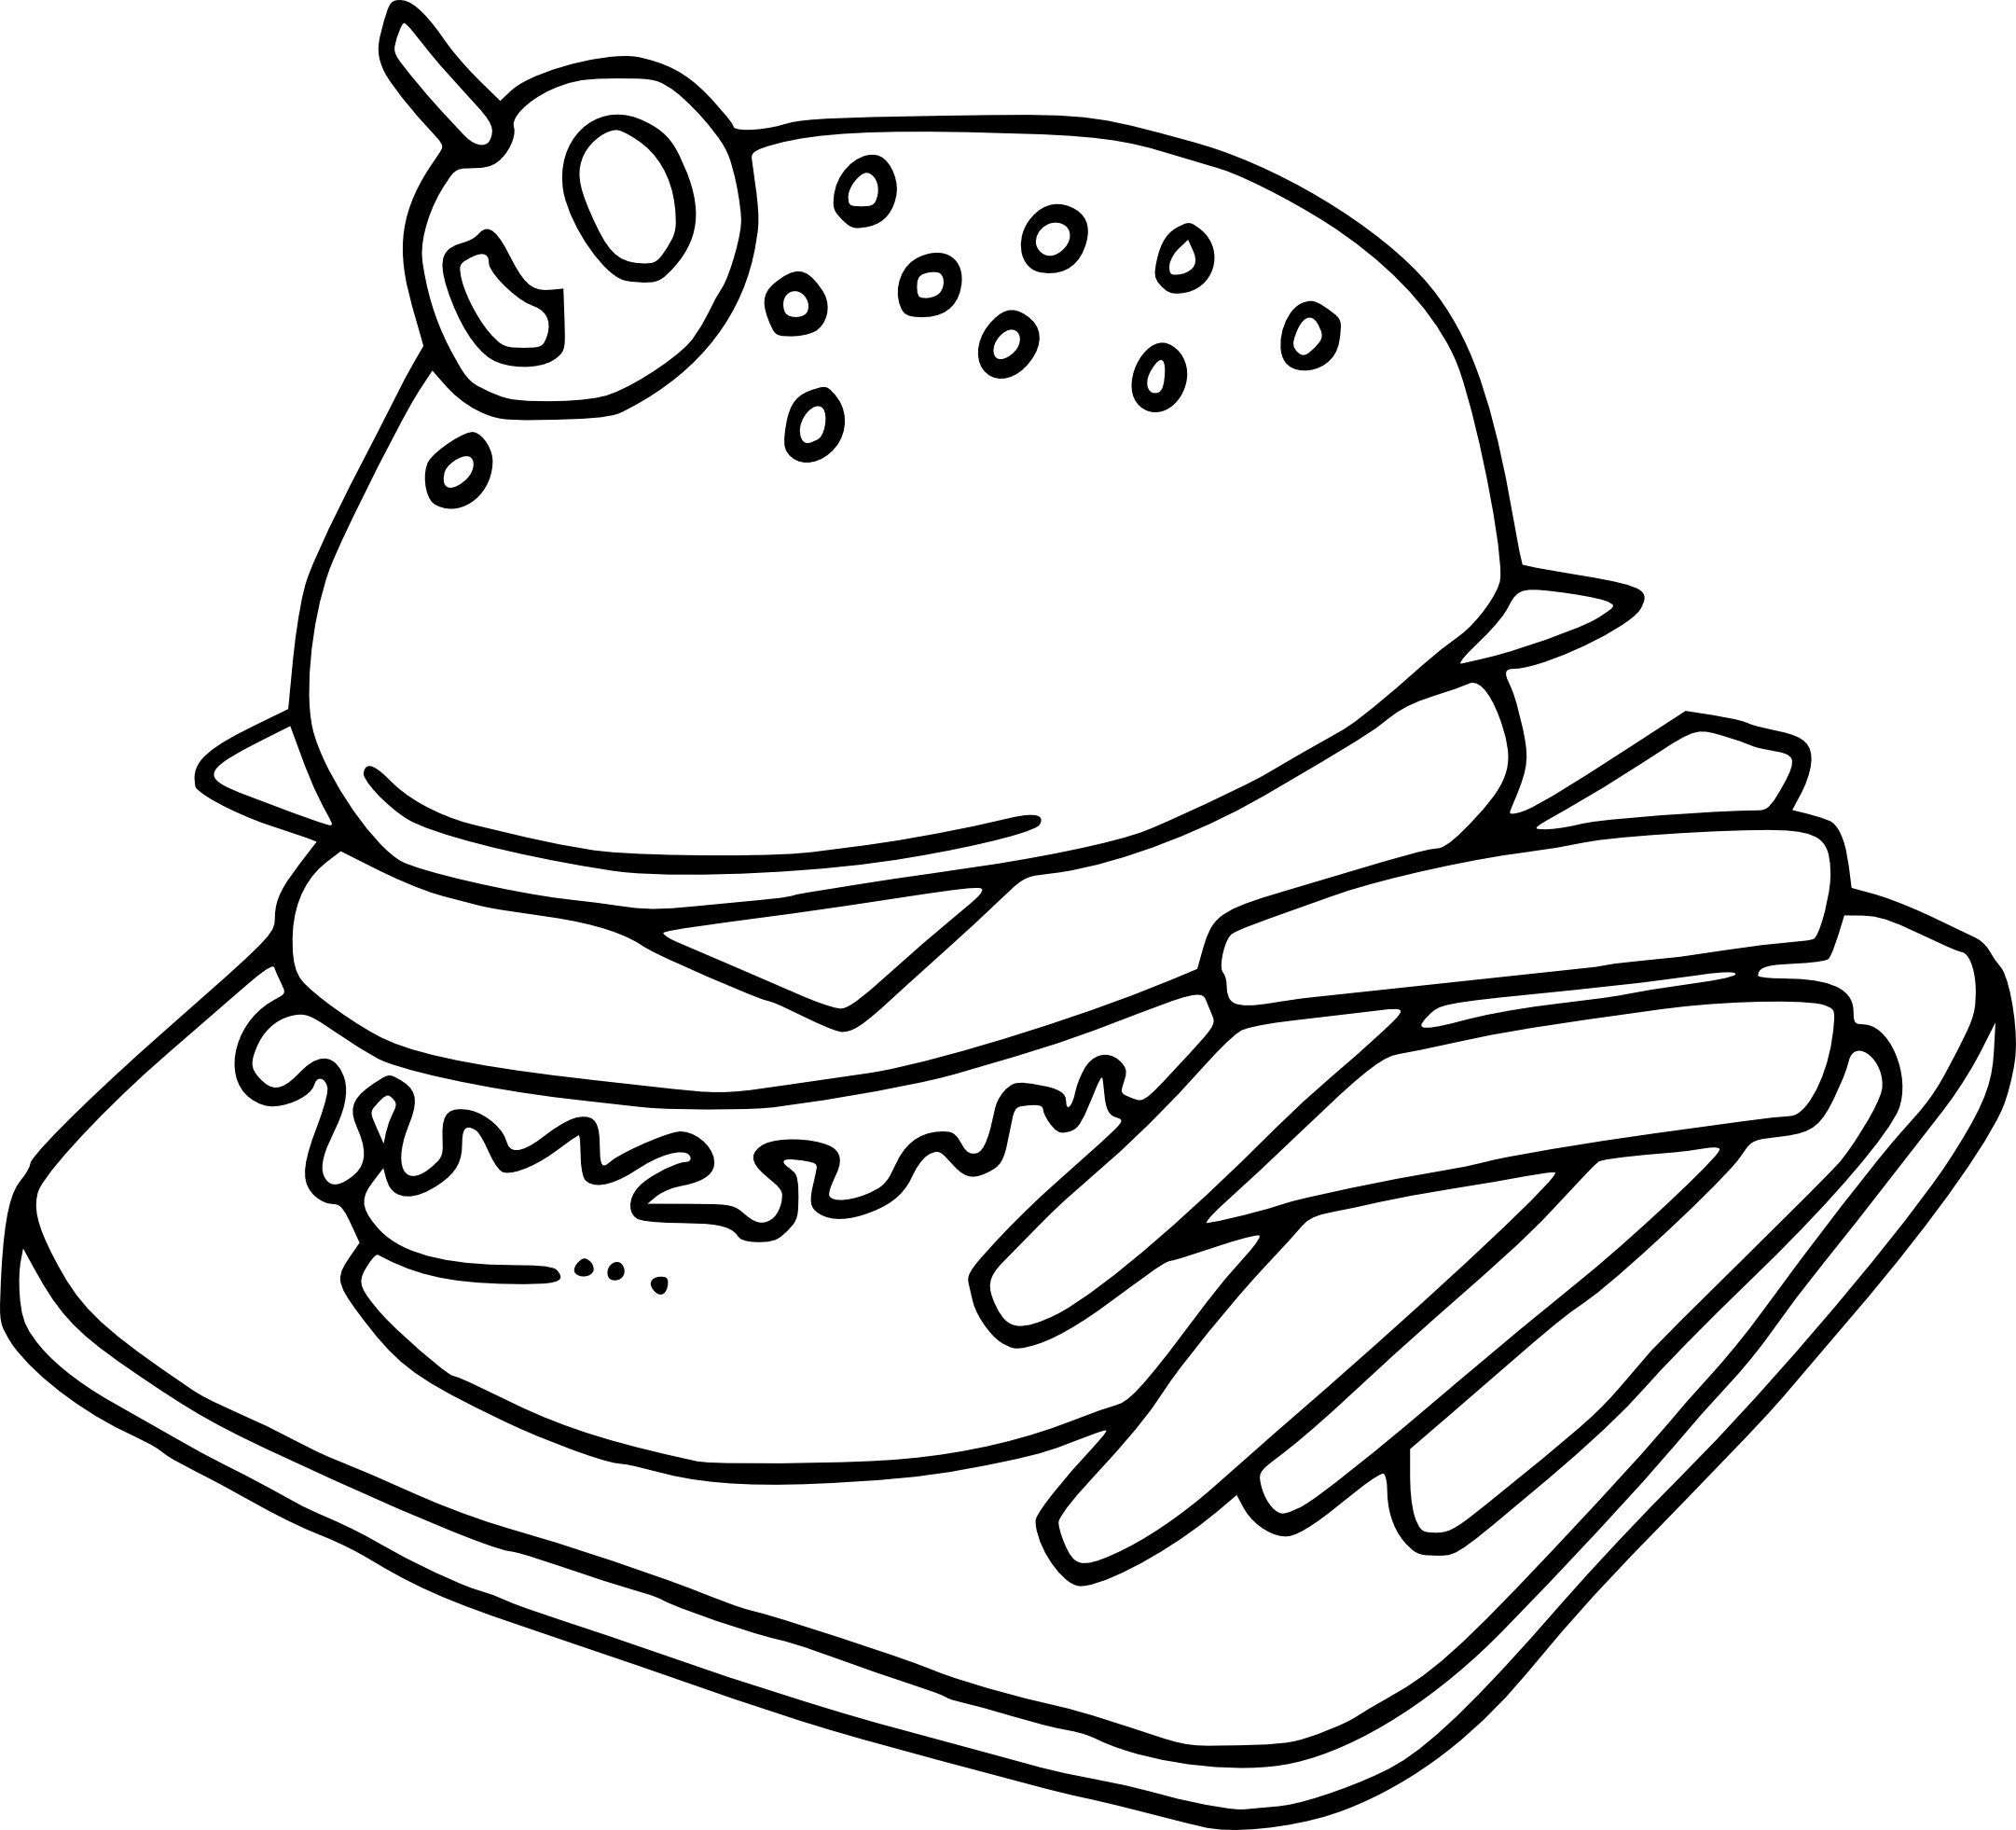 Раскраска фаст фуд. Раскраска еда. Раскраска бургер. Раскраска гамбургер. Раскраска бутерброд.